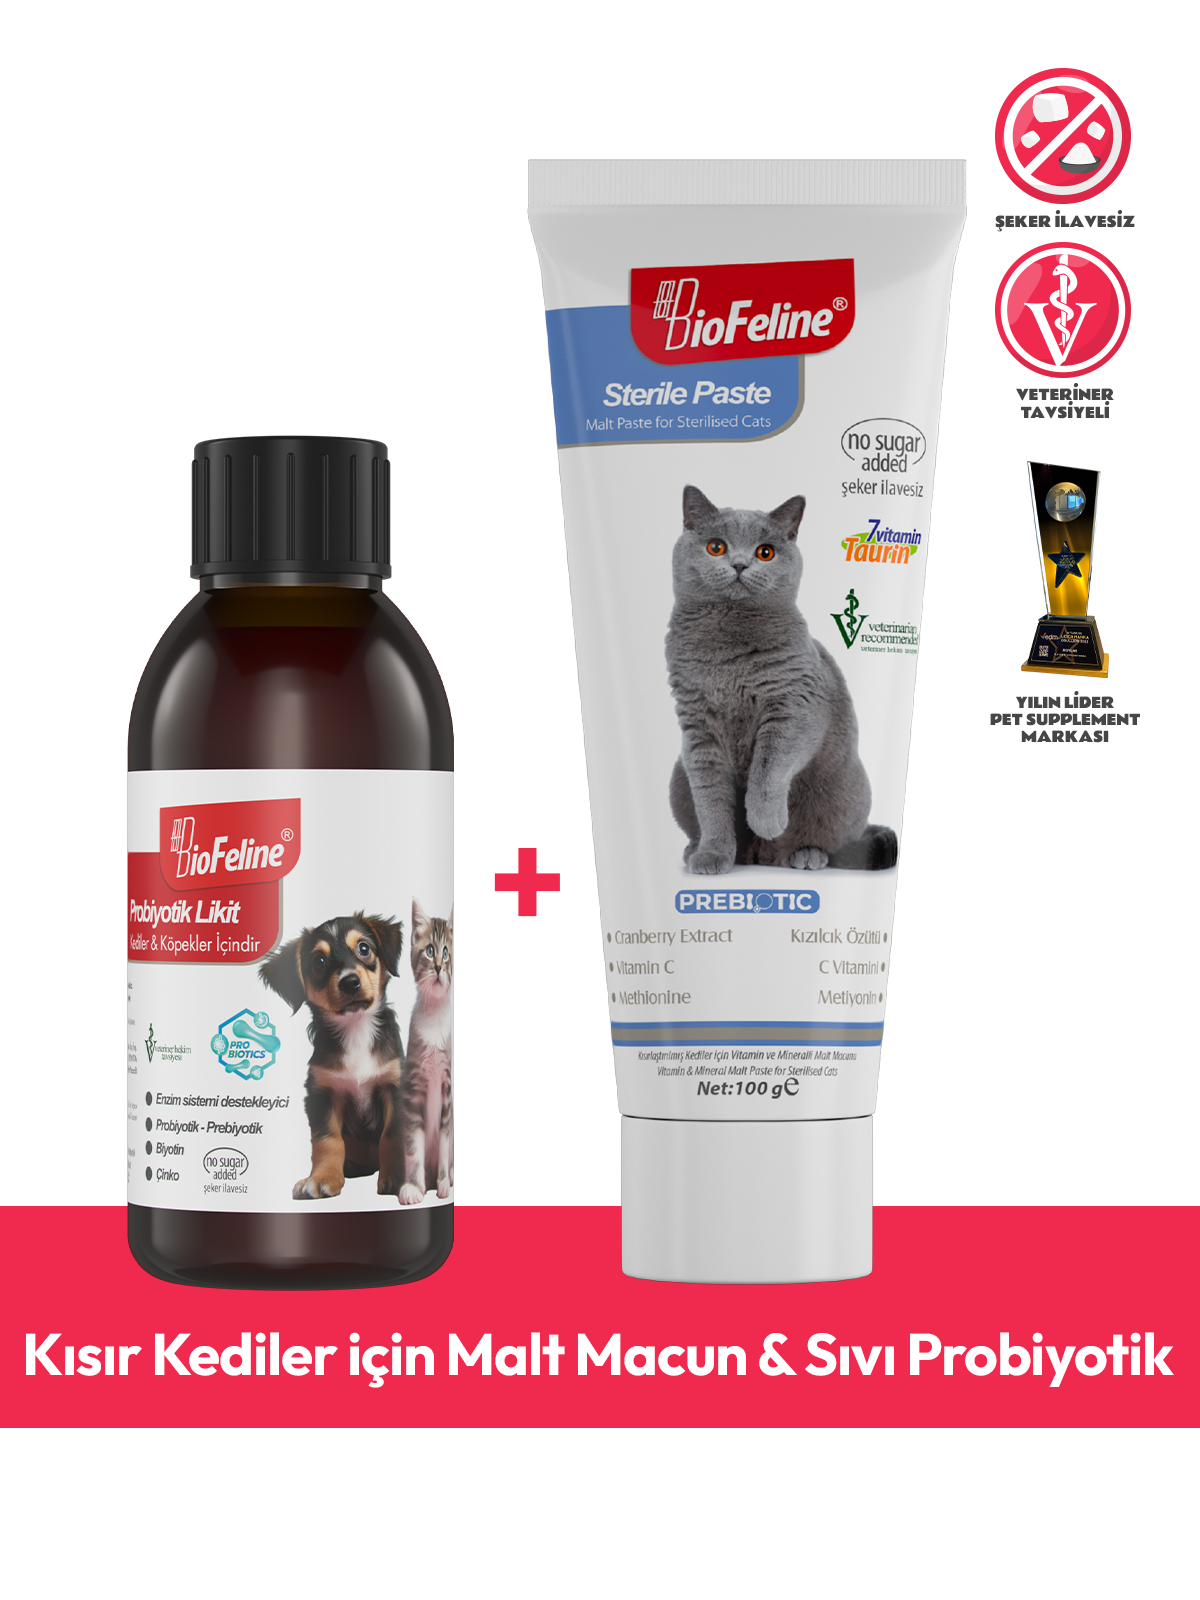 Kısır Kediler için Malt Macun & Sıvı Probiyotik